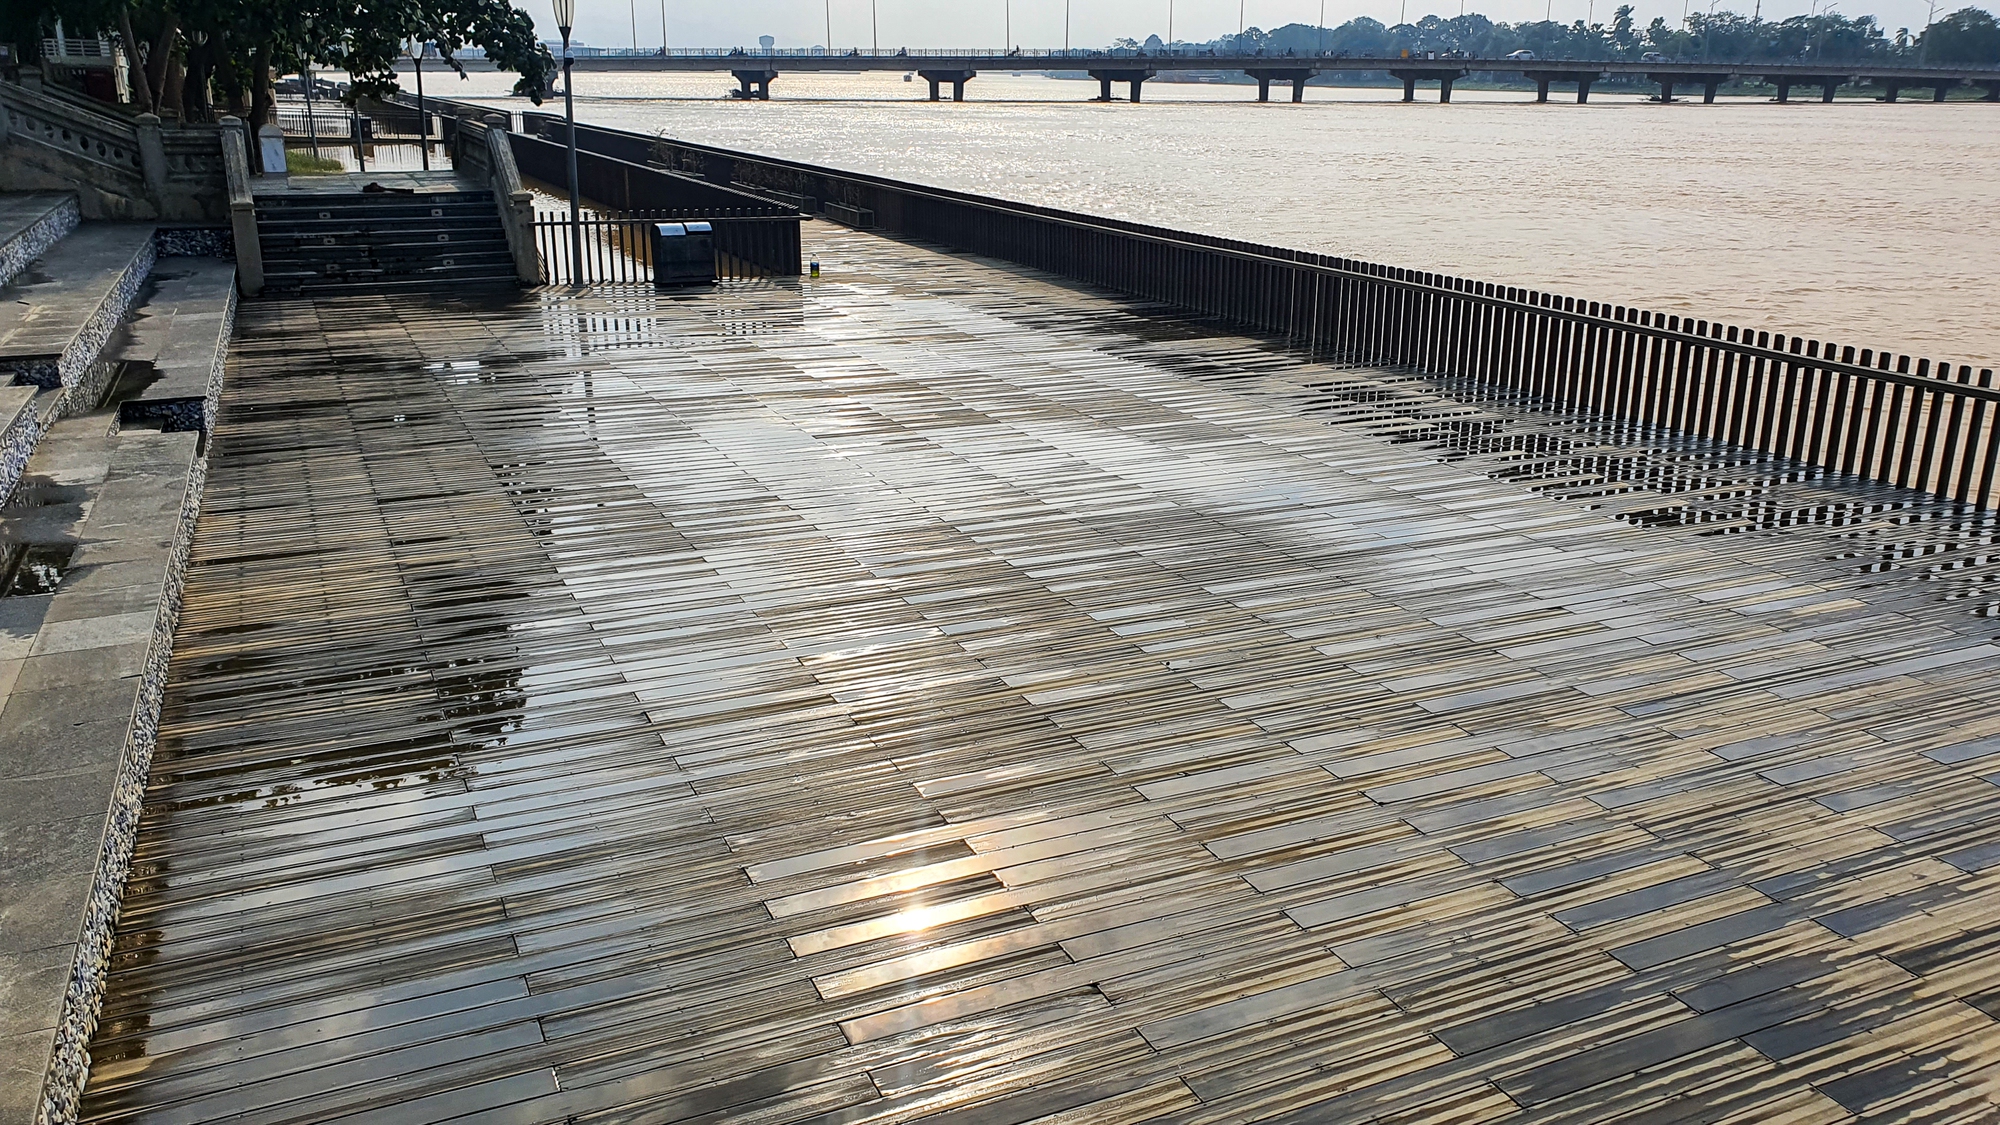 Rác dồn đống bên cầu gỗ lim trên sông Hương, lực lượng chức năng ra sức dọn dẹp - Ảnh 11.